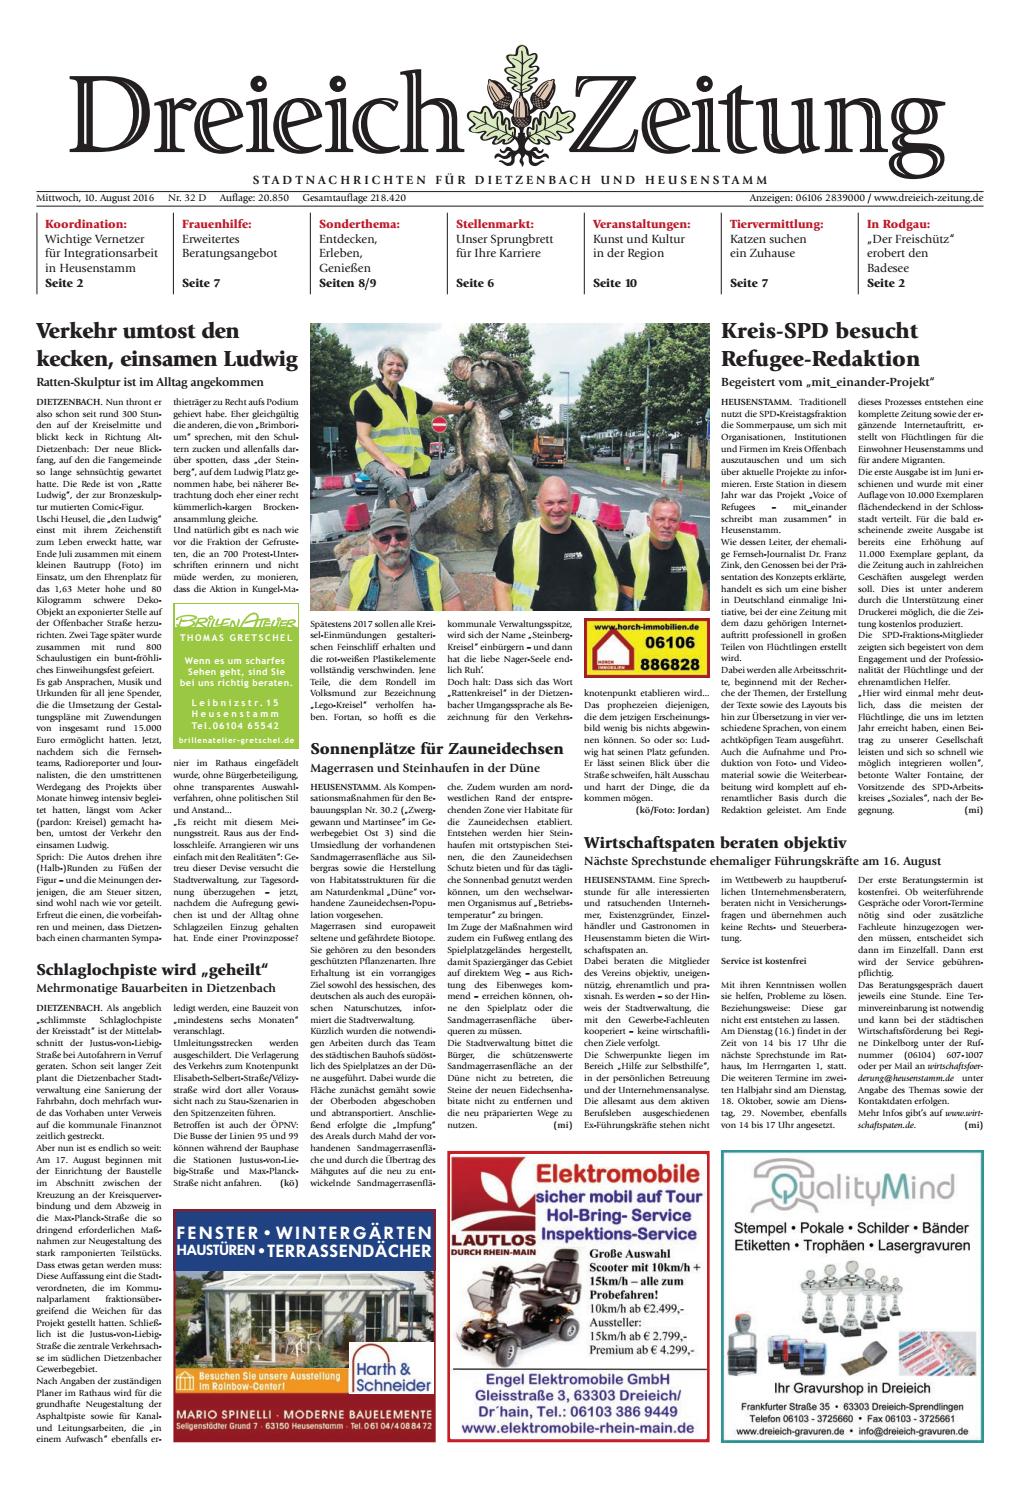 Gartenskulpturen Holz Einzigartig Dz Online 032 16 D by Dreieich Zeitung Fenbach Journal issuu